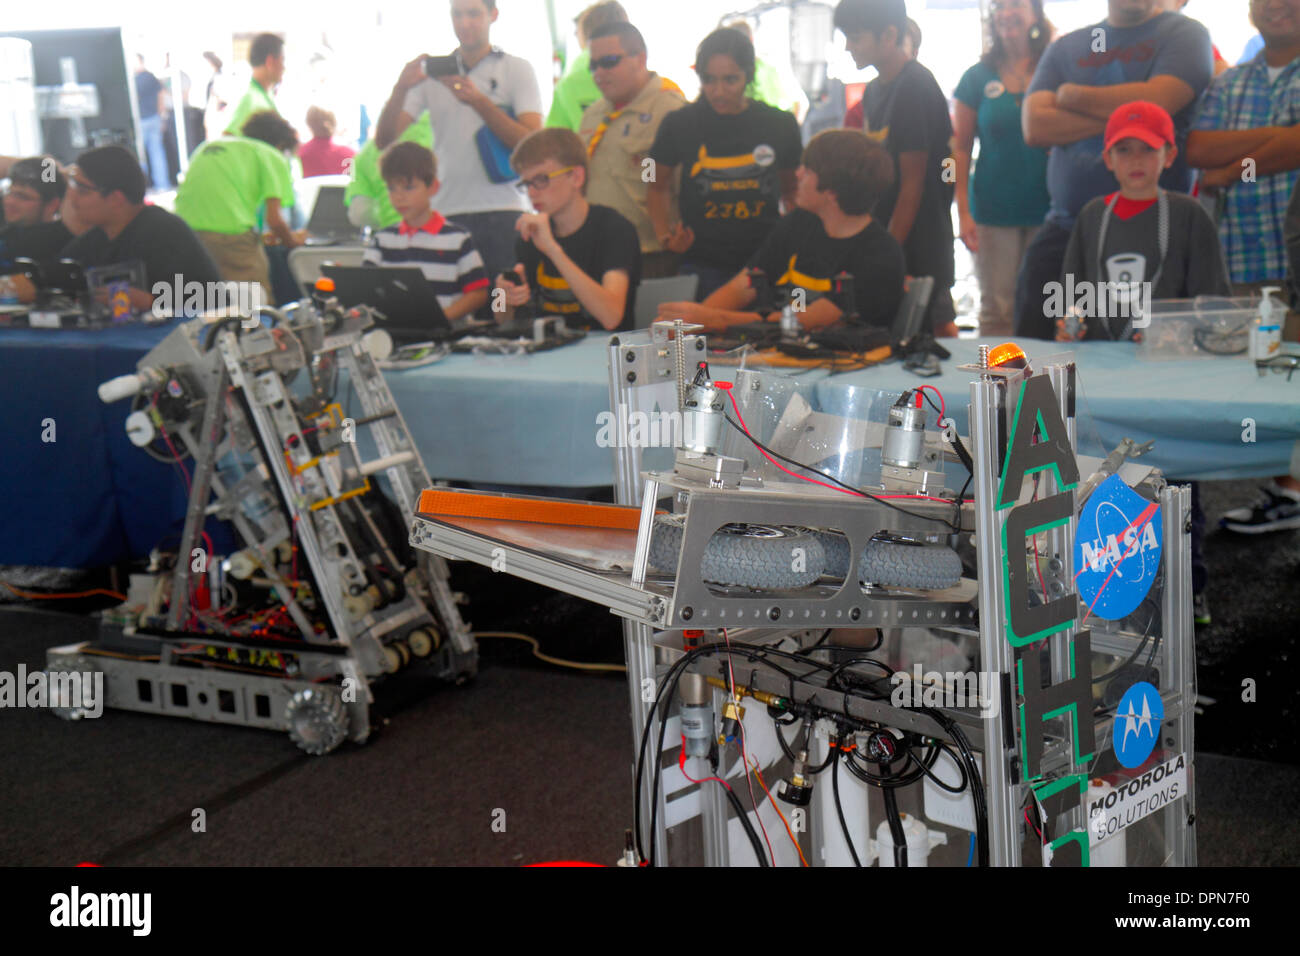 Miami Florida,Homestead,Speedway,DARPA Robotics Challenge Trials,mostra collezione studenti studenti ragazzi,ragazzi ragazzi bambini bambini Foto Stock